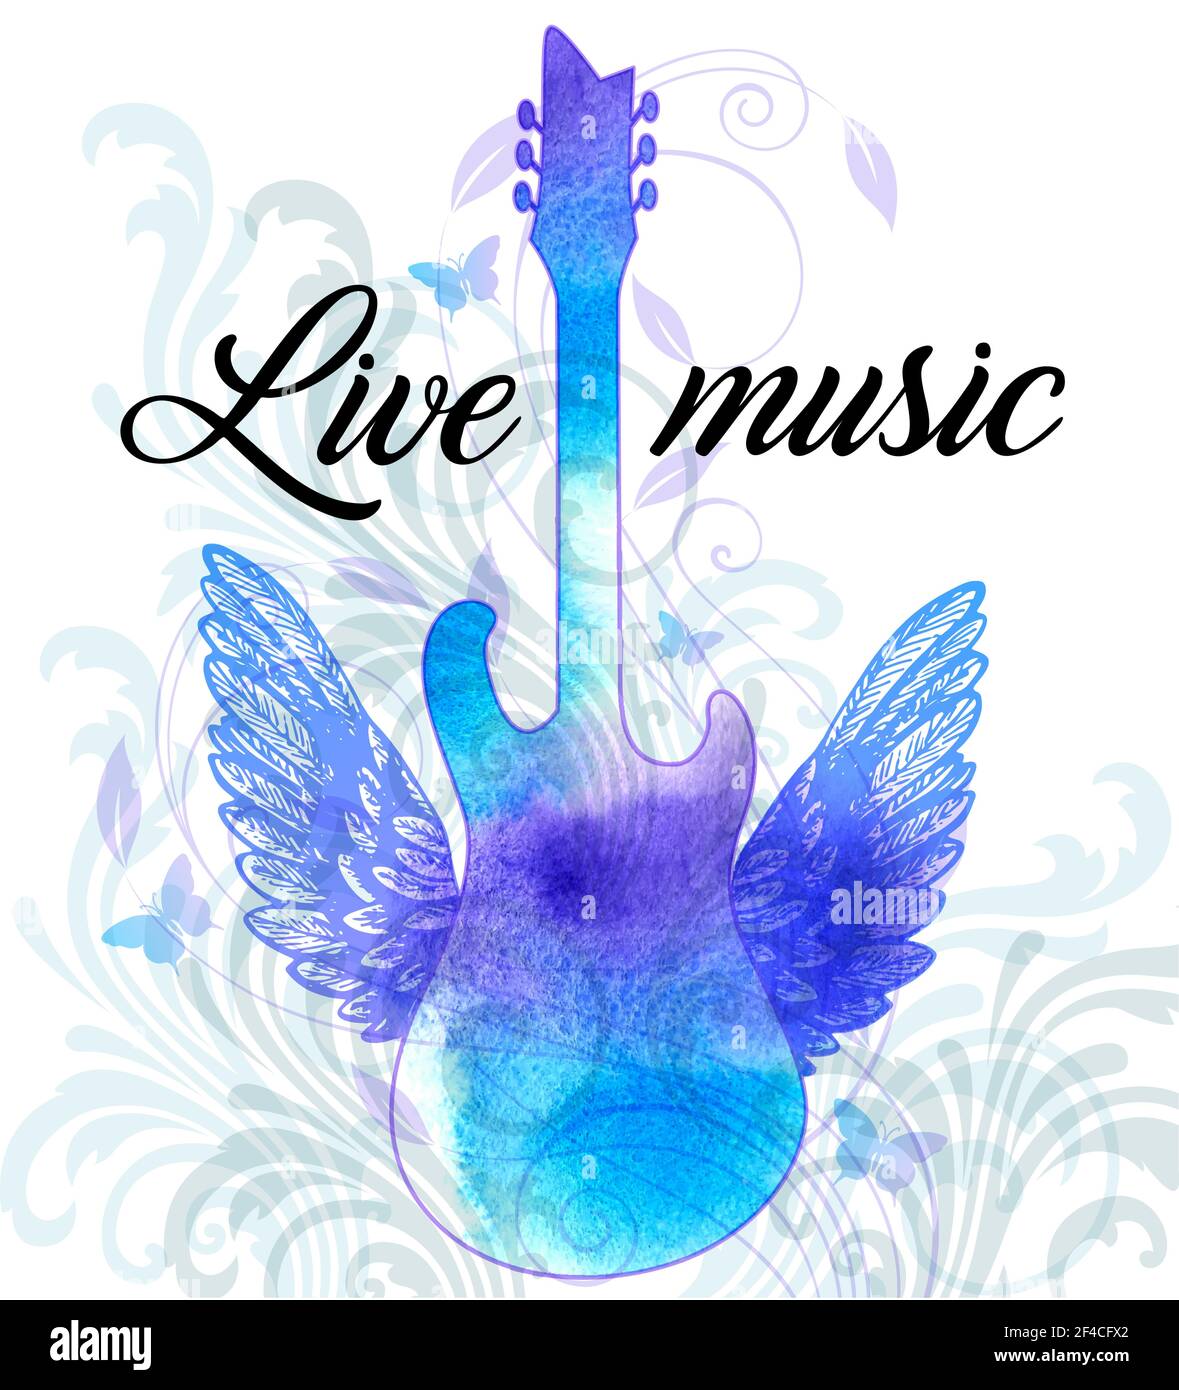 Vintage Vektor Rock Musik Poster mit blauen Aquarell Gitarre, Flügel und floralen Ornament. Live-Musik-Schriftzug... Rockmusik-Poster mit blauer Aquarell-Gitarre Stock Vektor